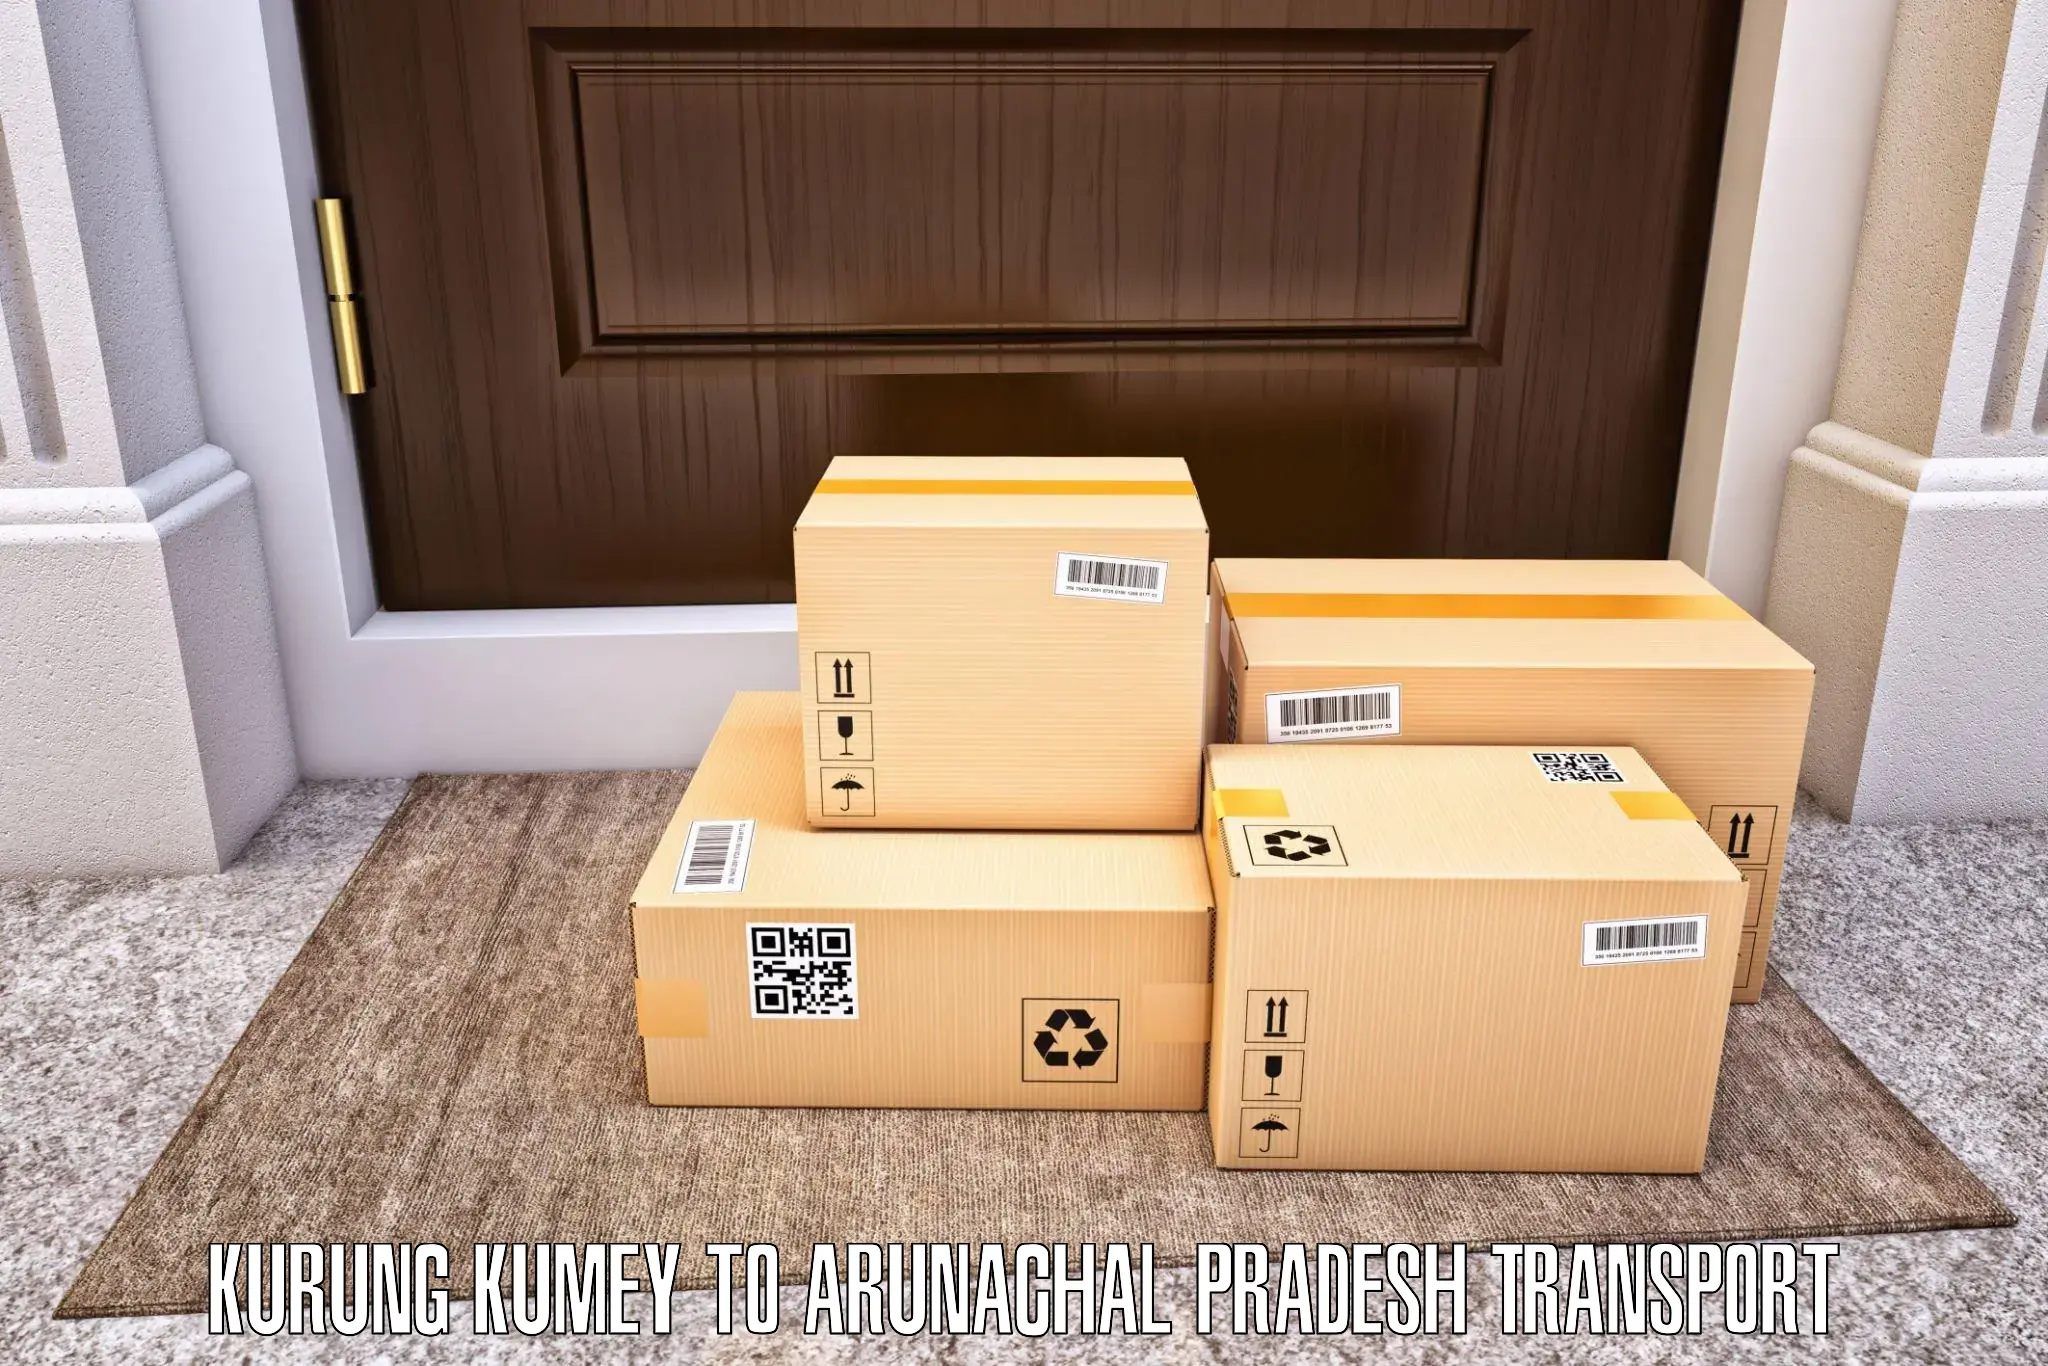 Furniture transport service Kurung Kumey to Dirang